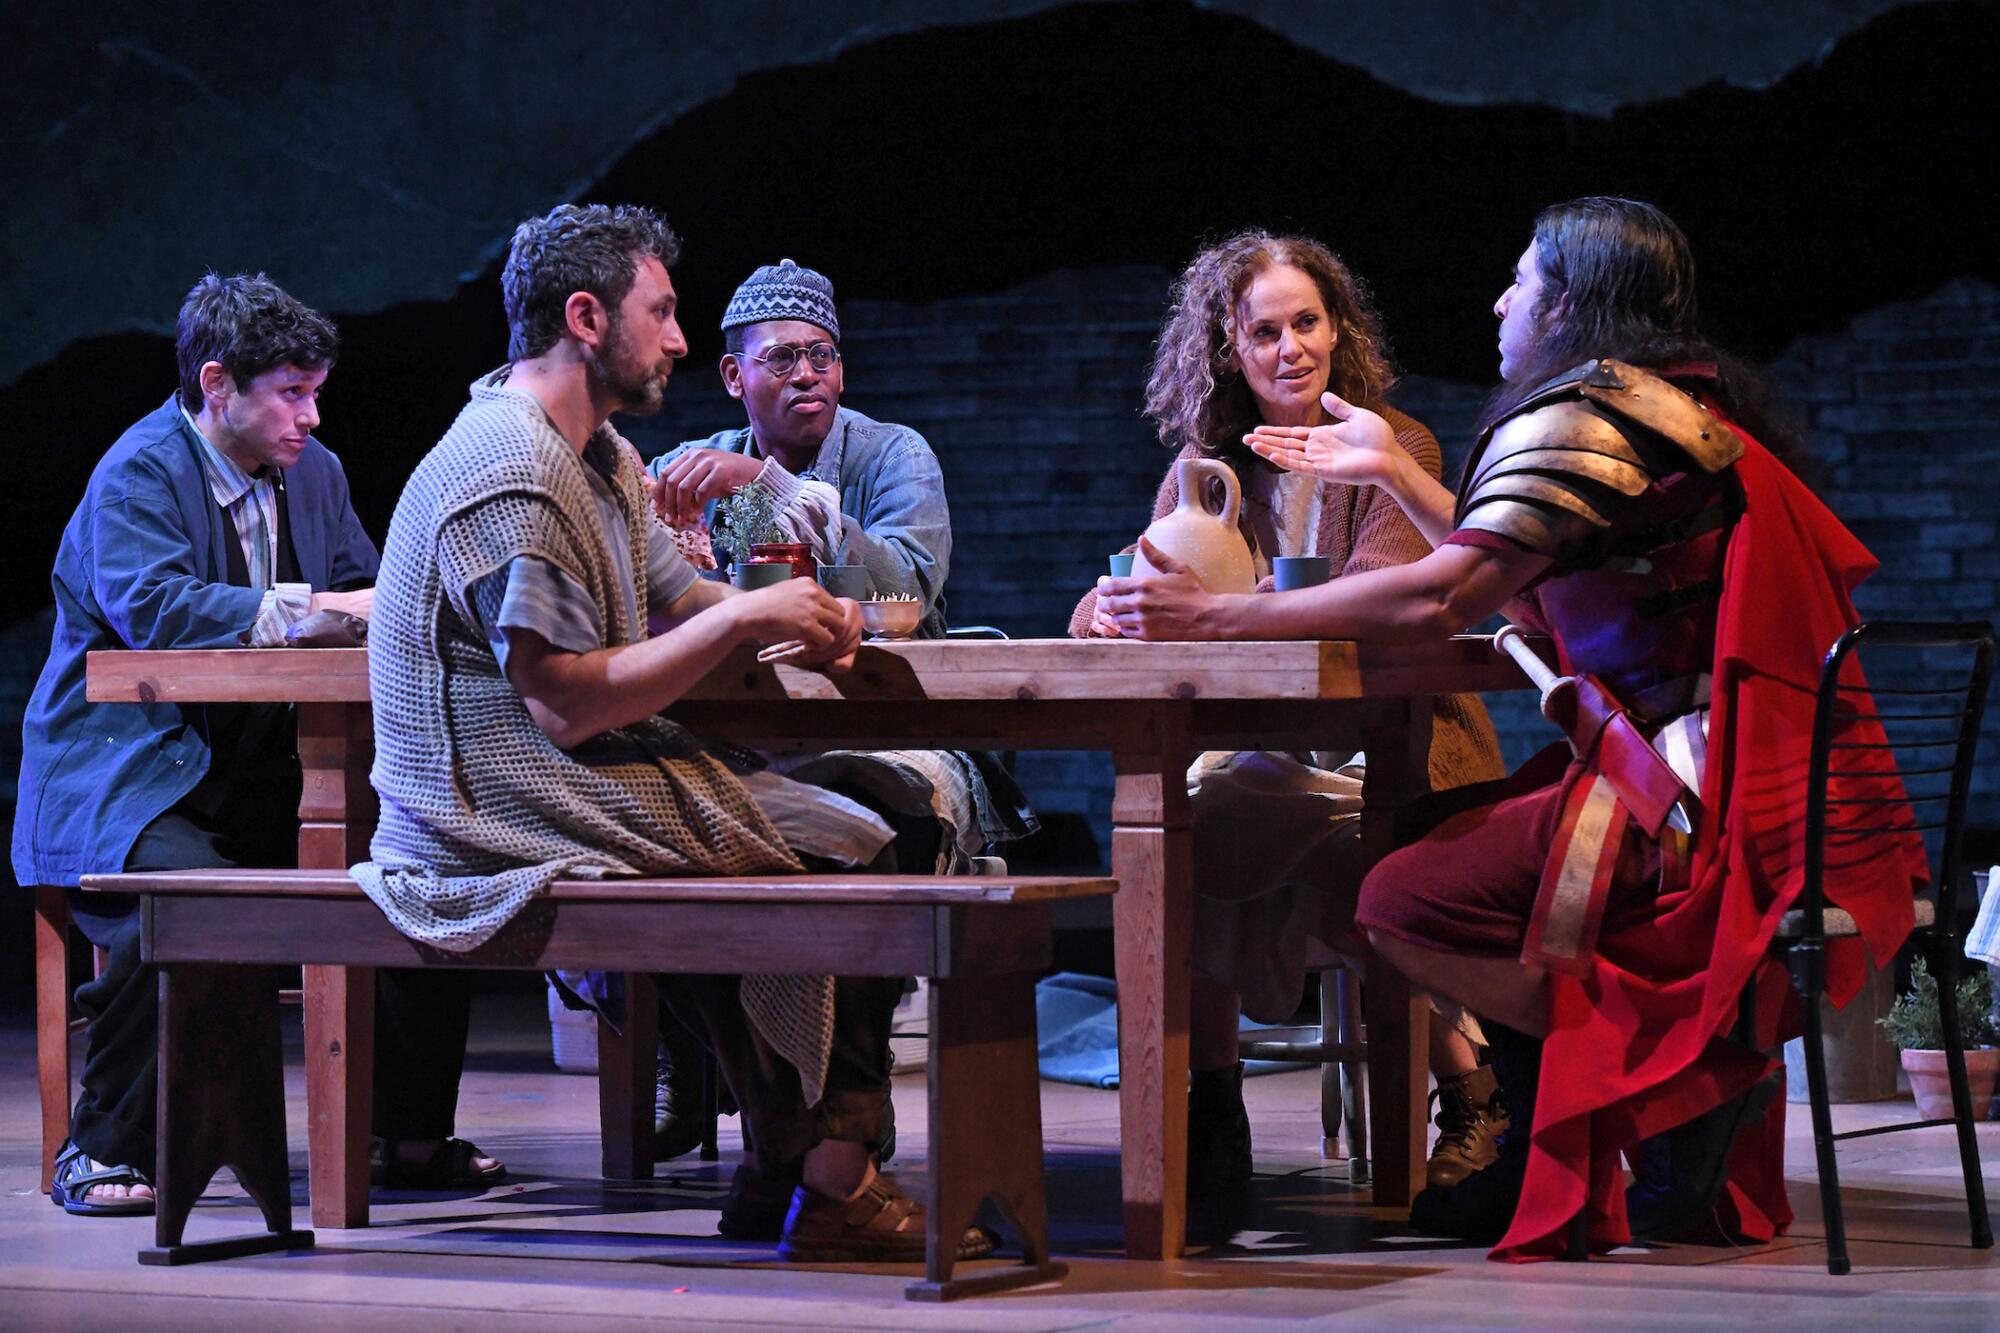 Eine als römischer Zenturio verkleidete Person spricht mit vier Personen, die an einem Tisch auf der Bühne sitzen